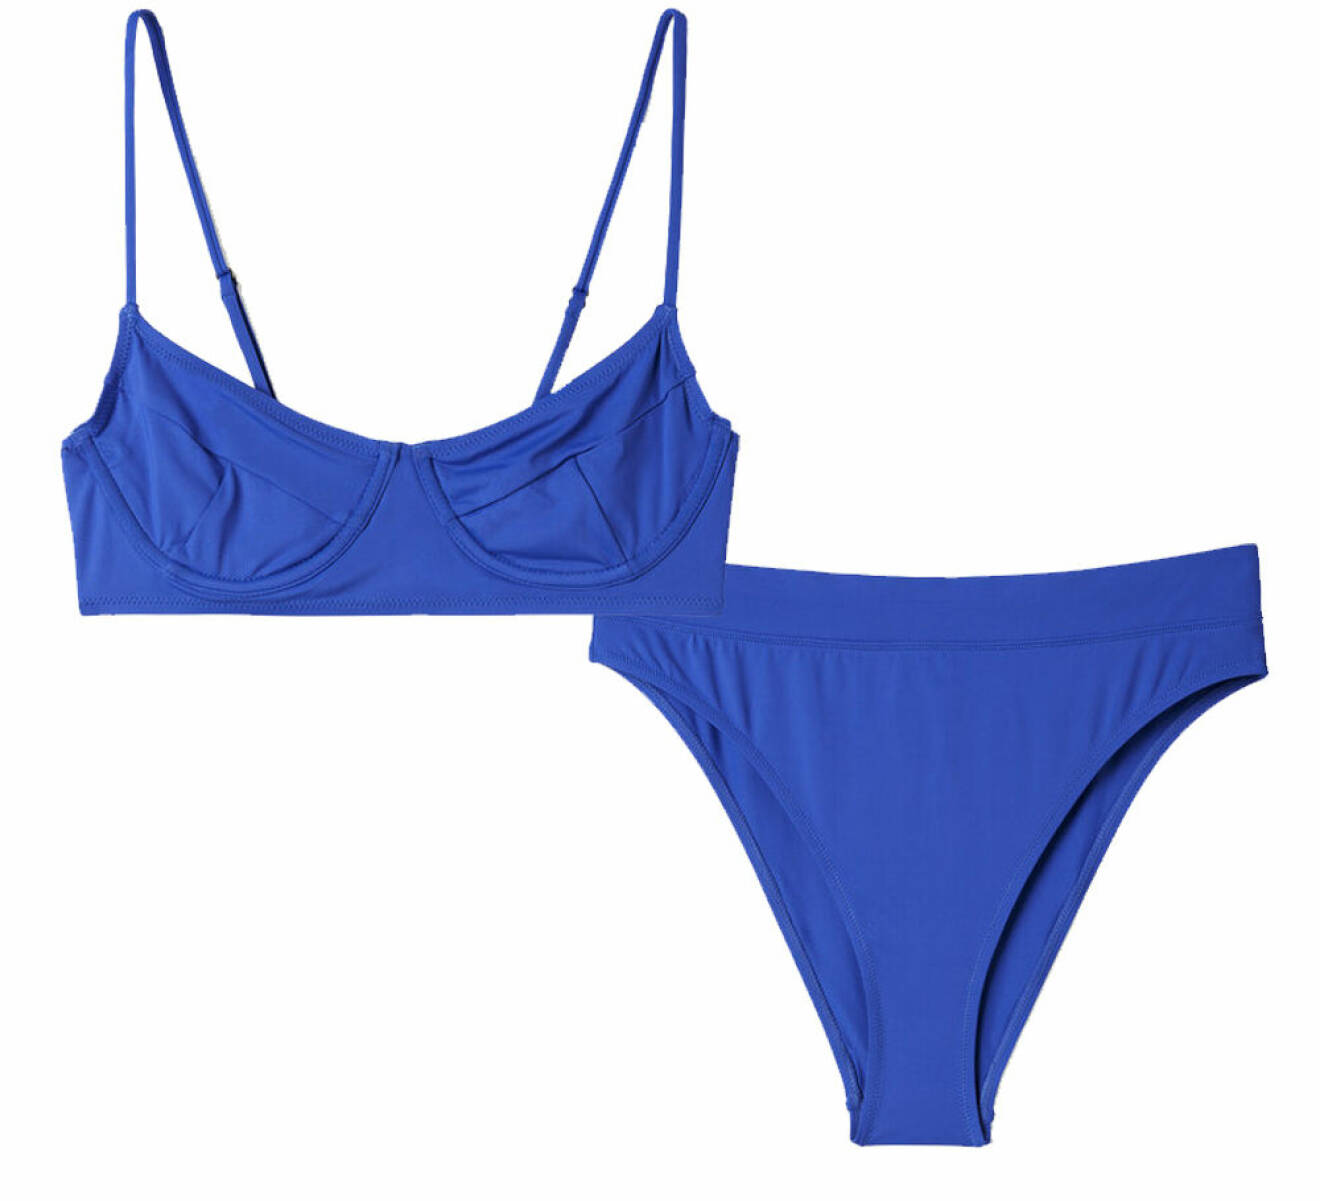 blå bikini med hög skärning och tunna band